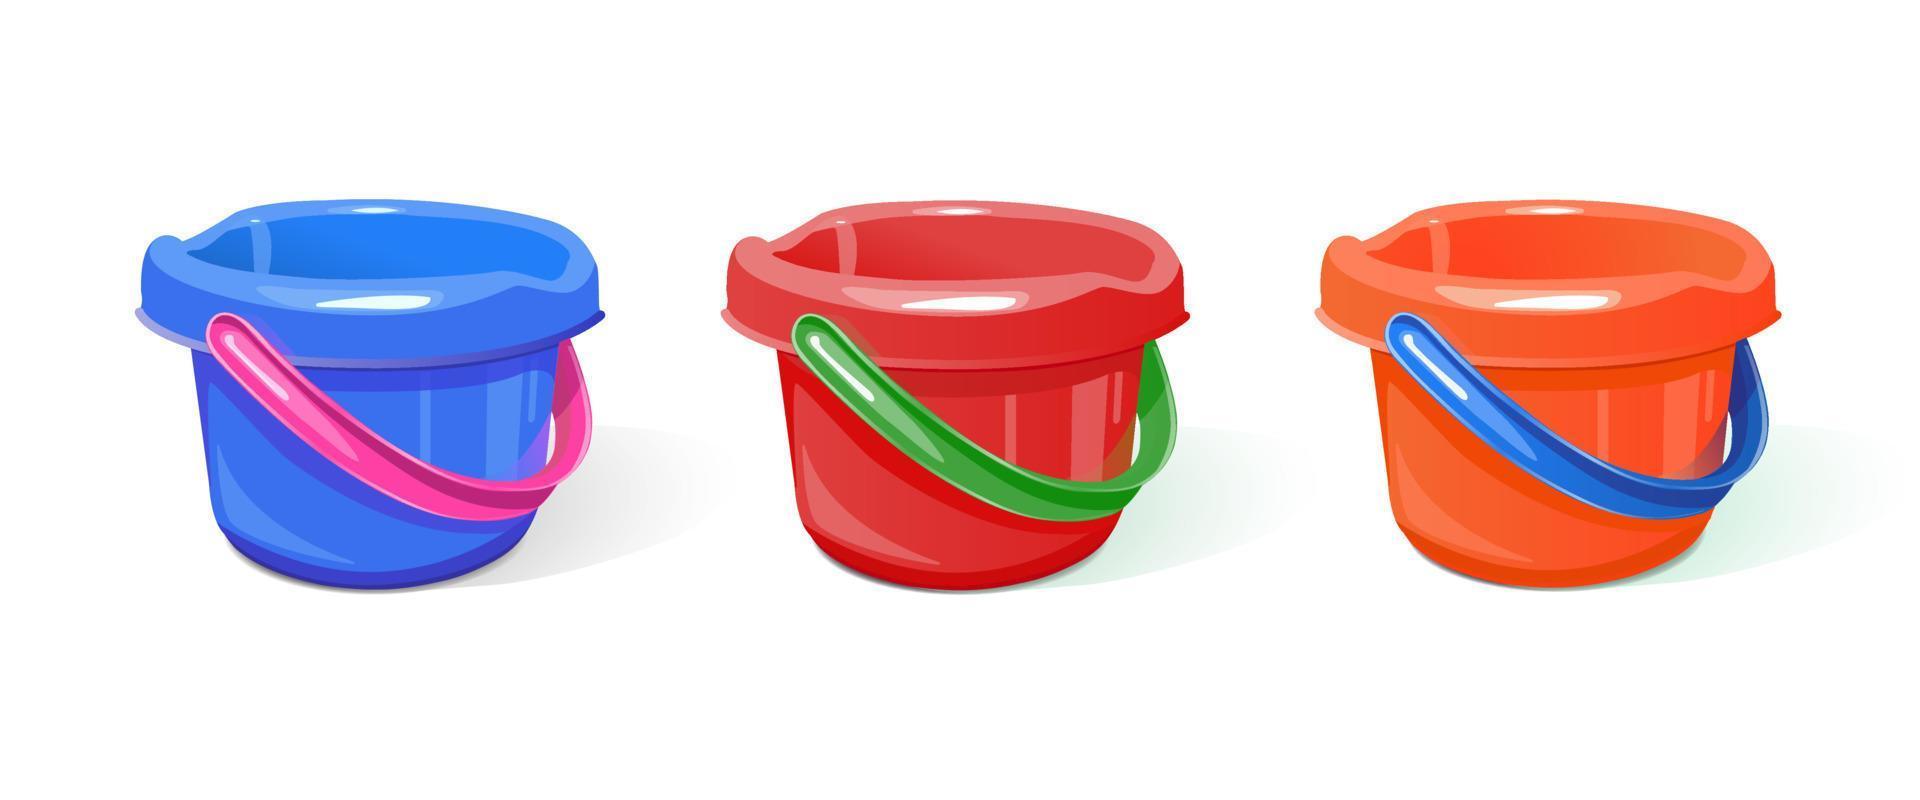 conjunto de baldes de plástico de cores diferentes para trabalhos domésticos, para jogos infantis na caixa de areia. uma imagem realista. isolado no fundo branco. ilustração vetorial vetor